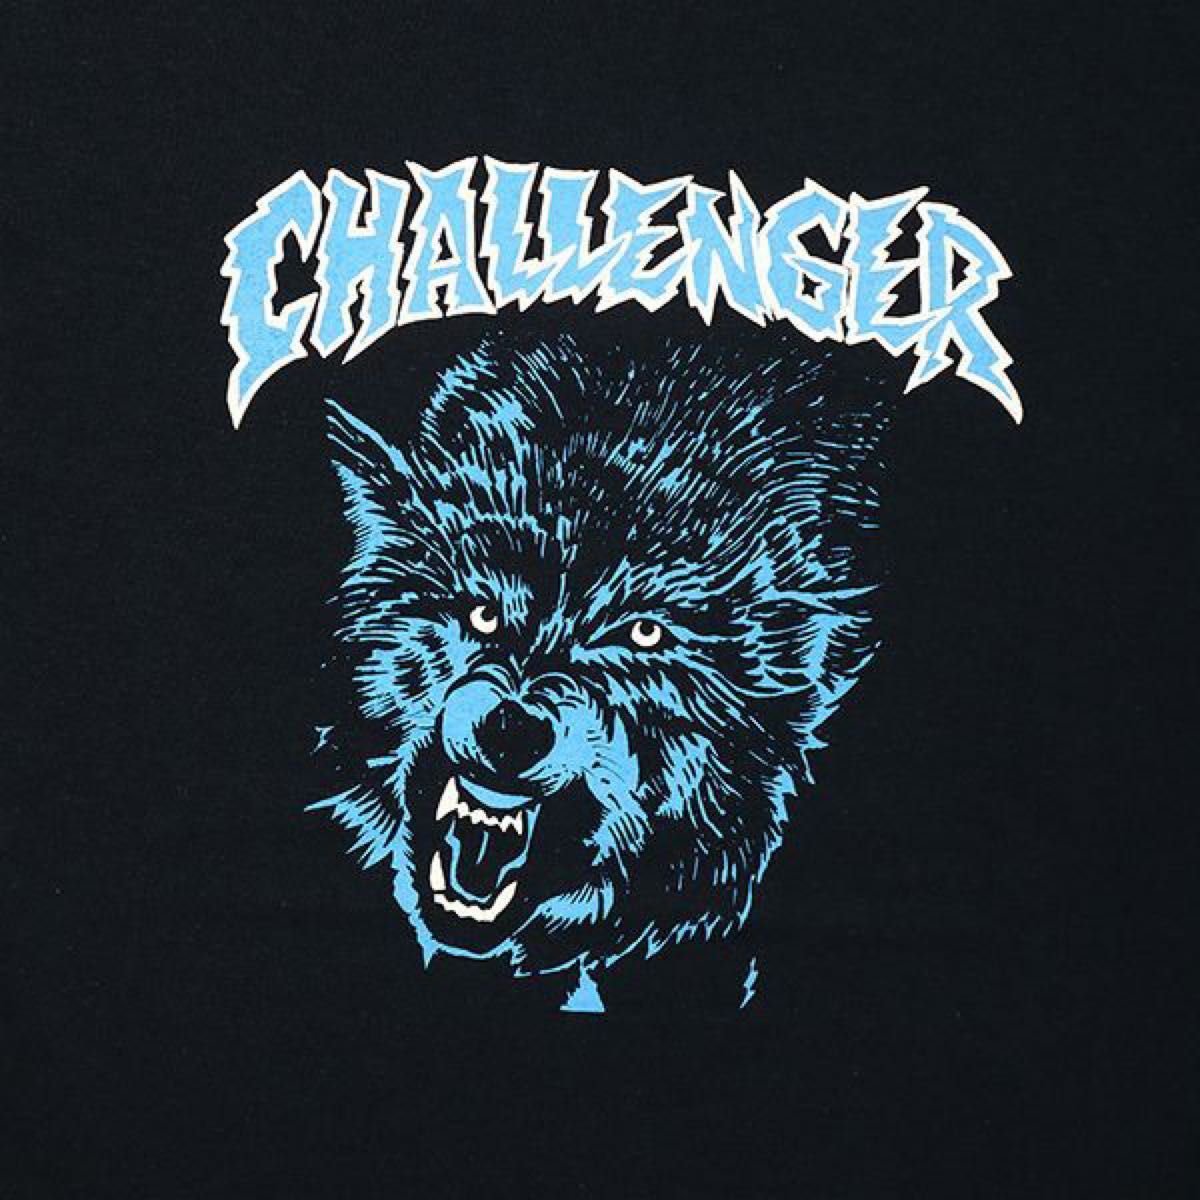 チャレンジャー ロングスリーブTシャツ/CHALLENGER ウルフ XLサイズ